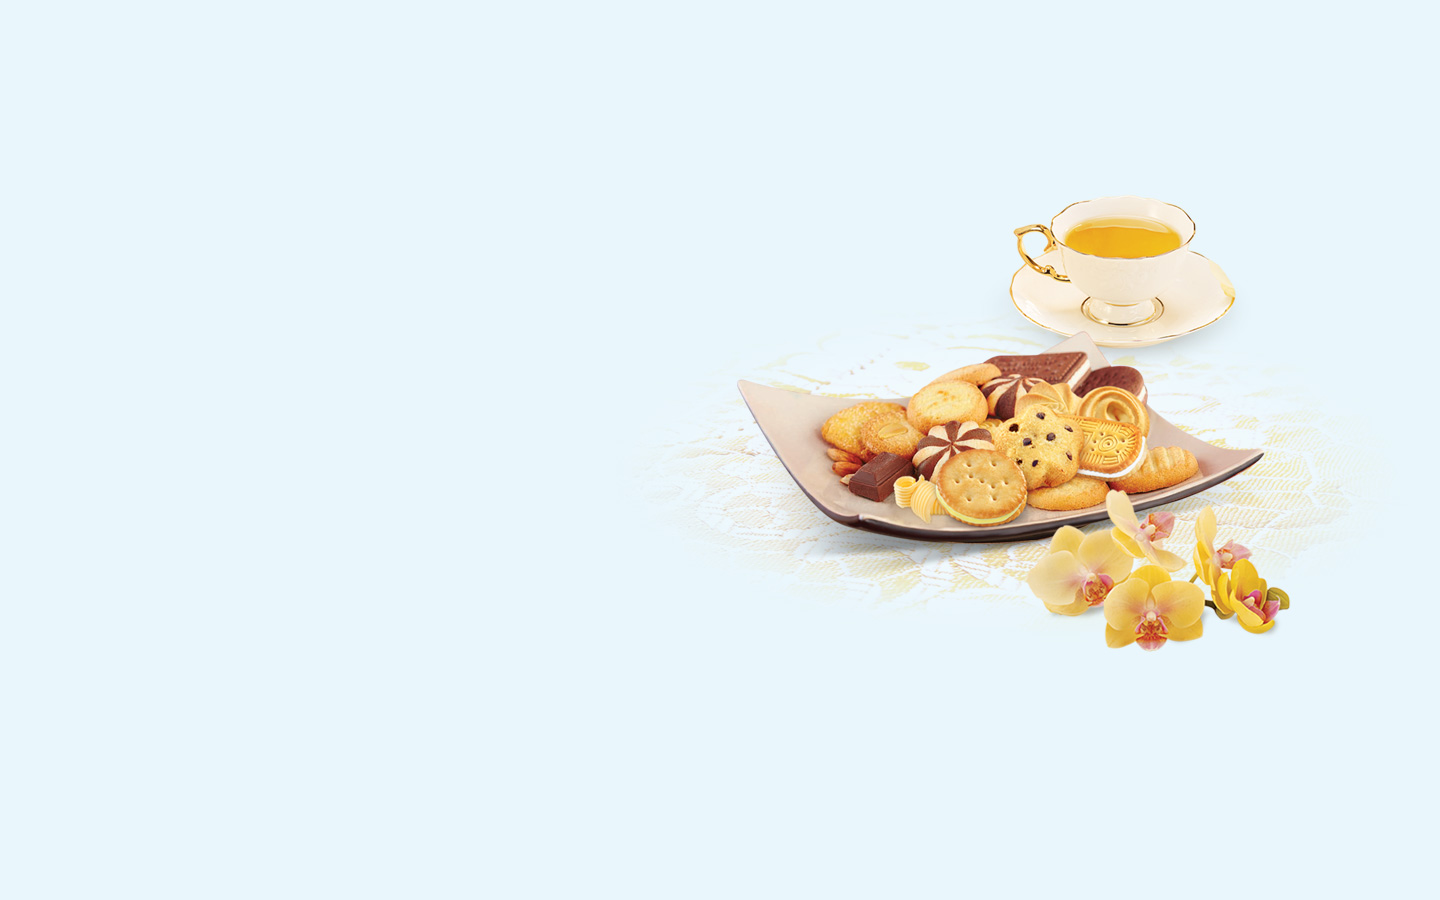 chương trình khuyến mại “Quà xinh bánh ngon, trọn năm vui vẻ”, Mondelez Kinh Đô mong muốn gửi lời cảm ơn người tiêu dùng 